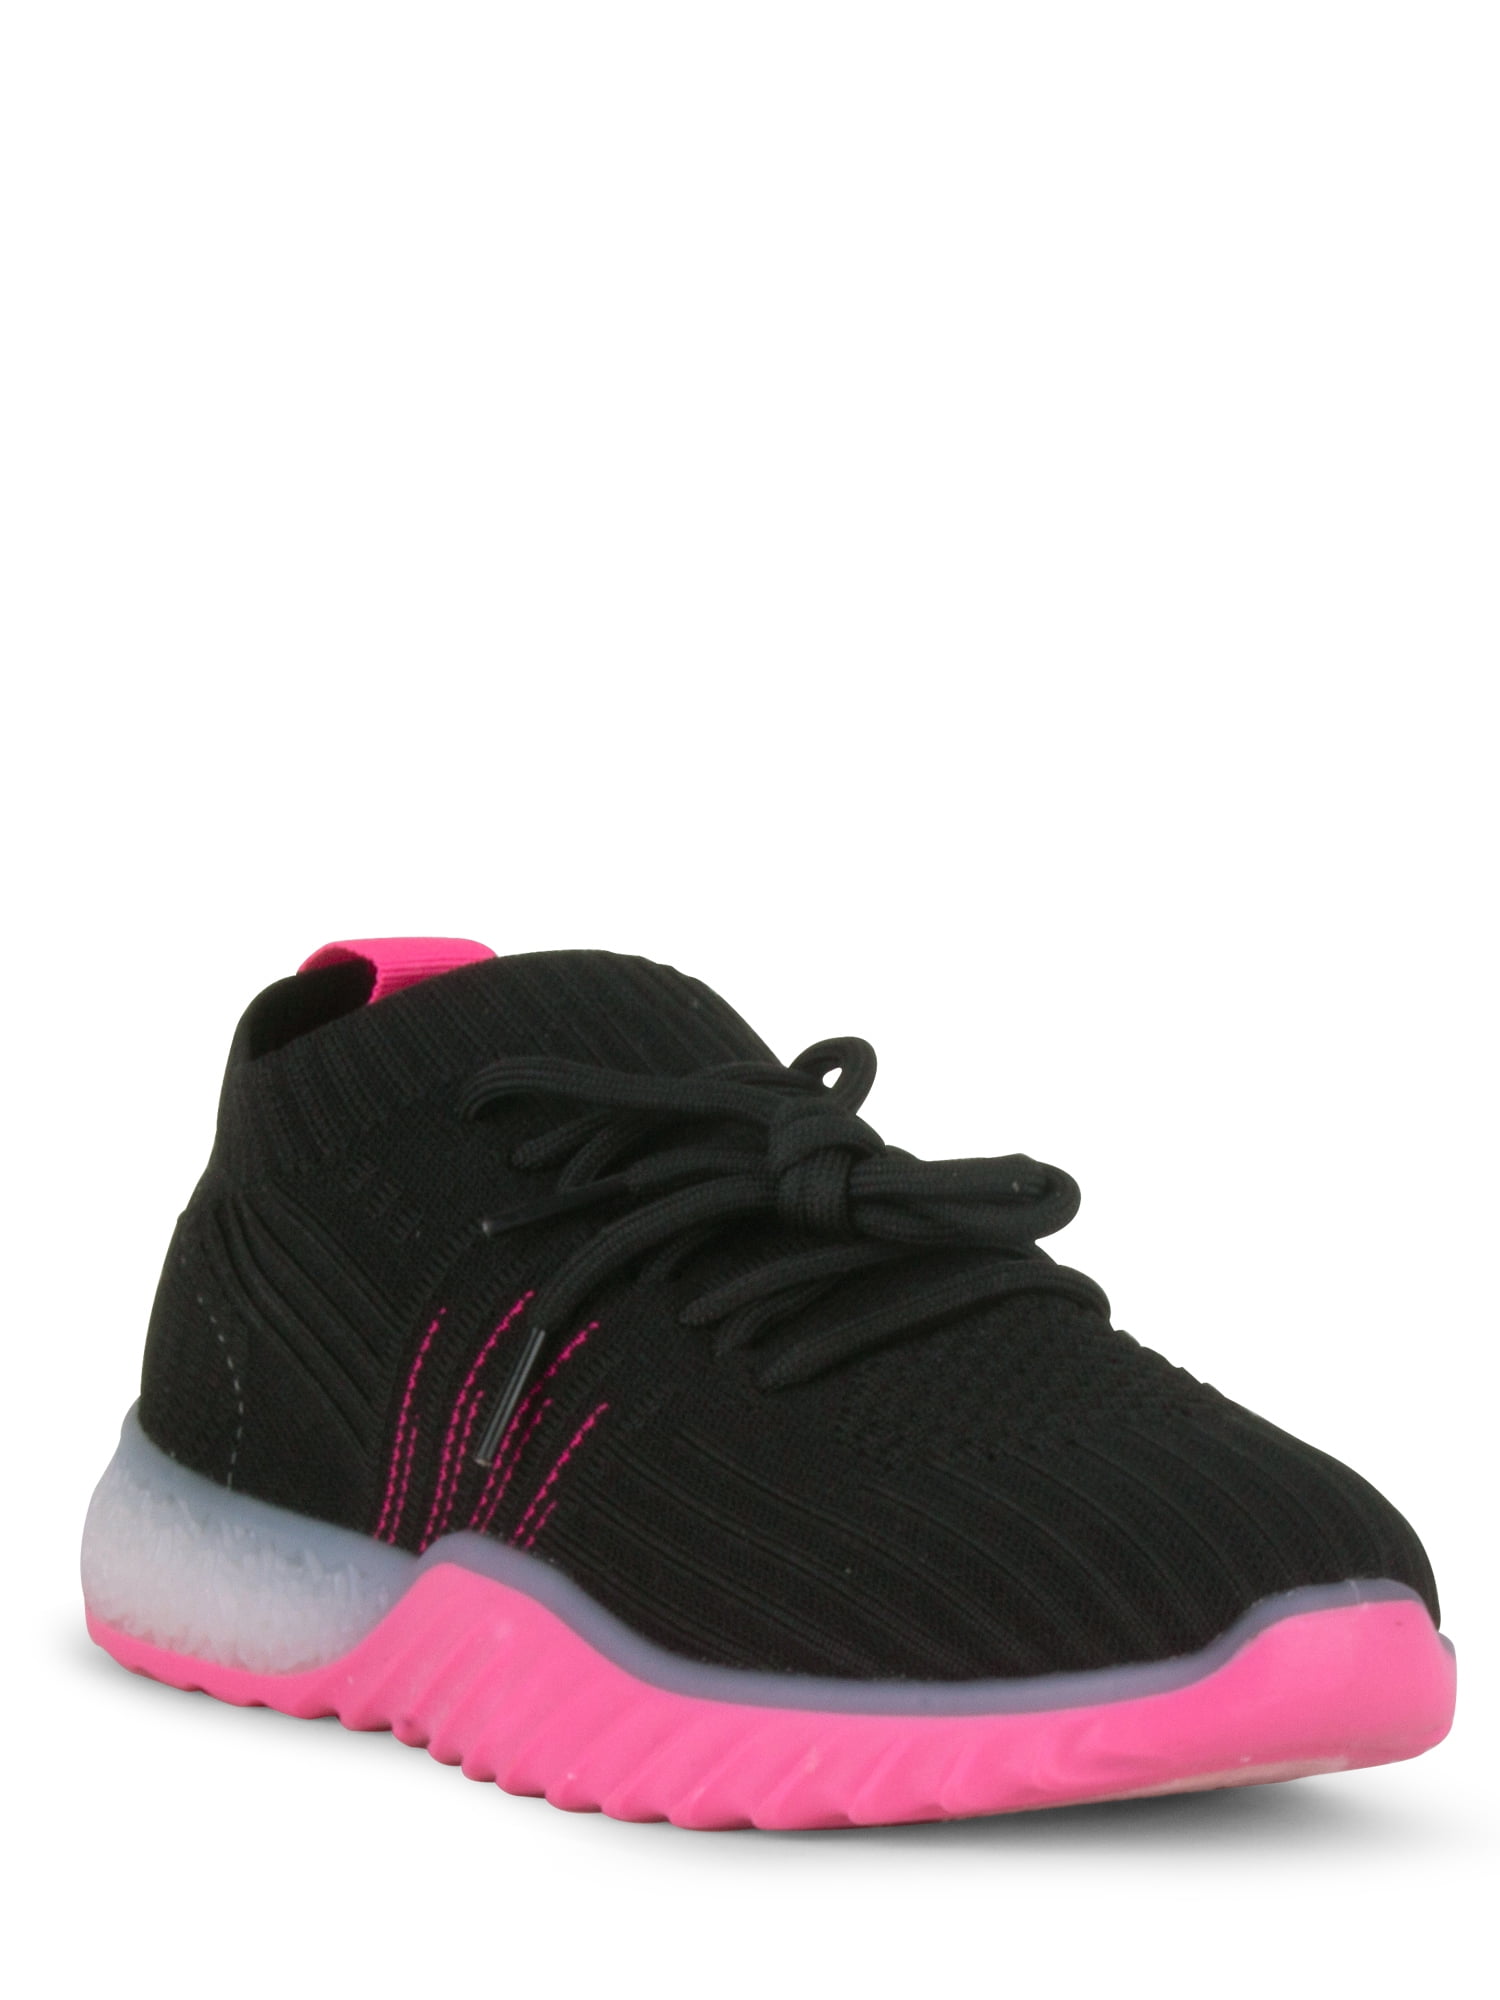 DANSKIN Women's Positive Lace Up Sneakers - Walmart.com